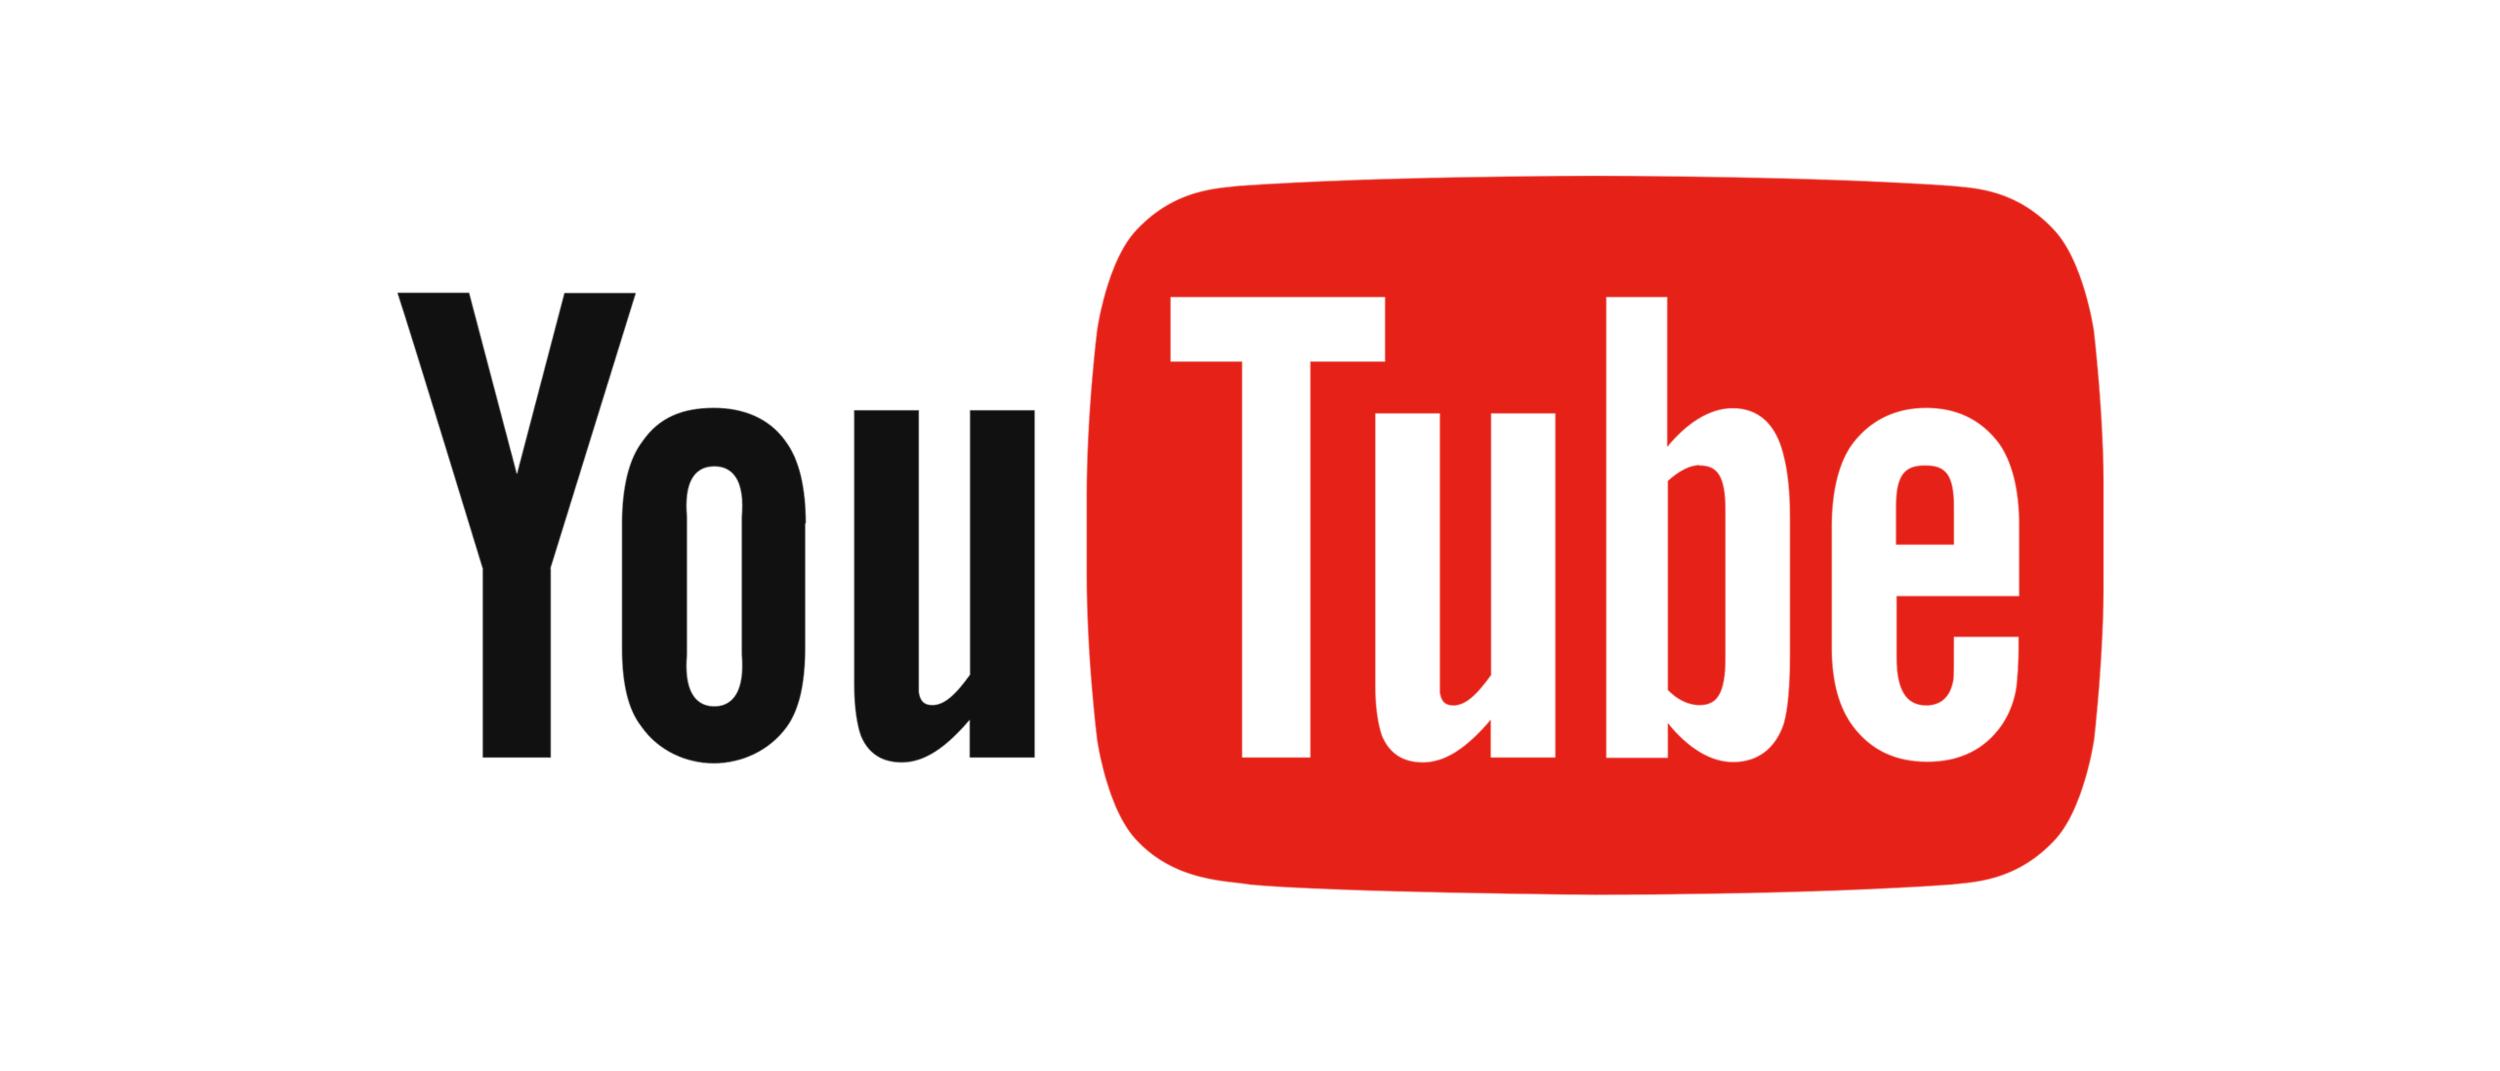 Слушать музыкальный канал. Youtube mp4. Ютуб Music. Youtube музыка логотип. Картинка для музыки на ютуб.